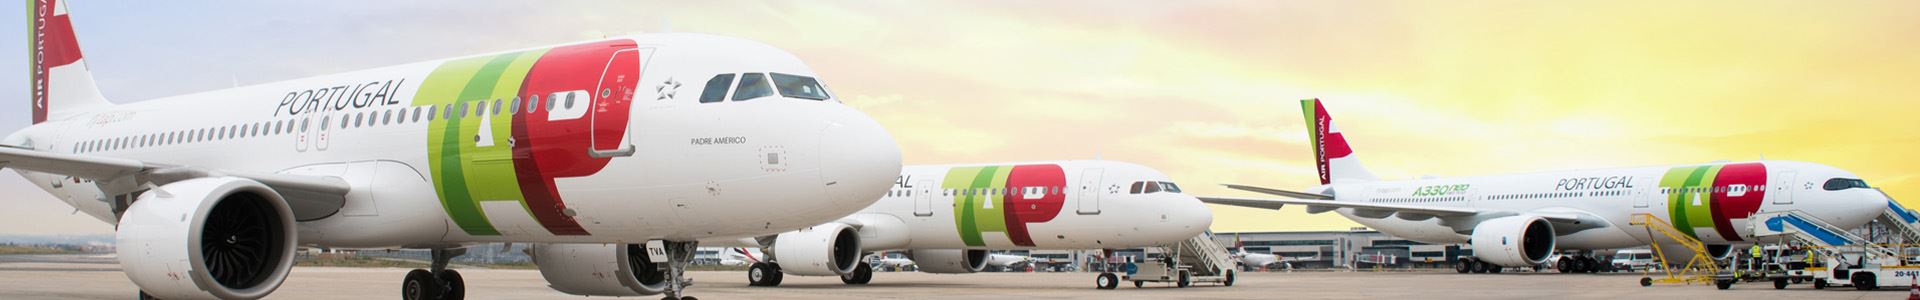 Zdjęcie przedstawiające trzy samoloty stojące obok siebie, ozdobione kolorami i logo TAP Air Portugal.